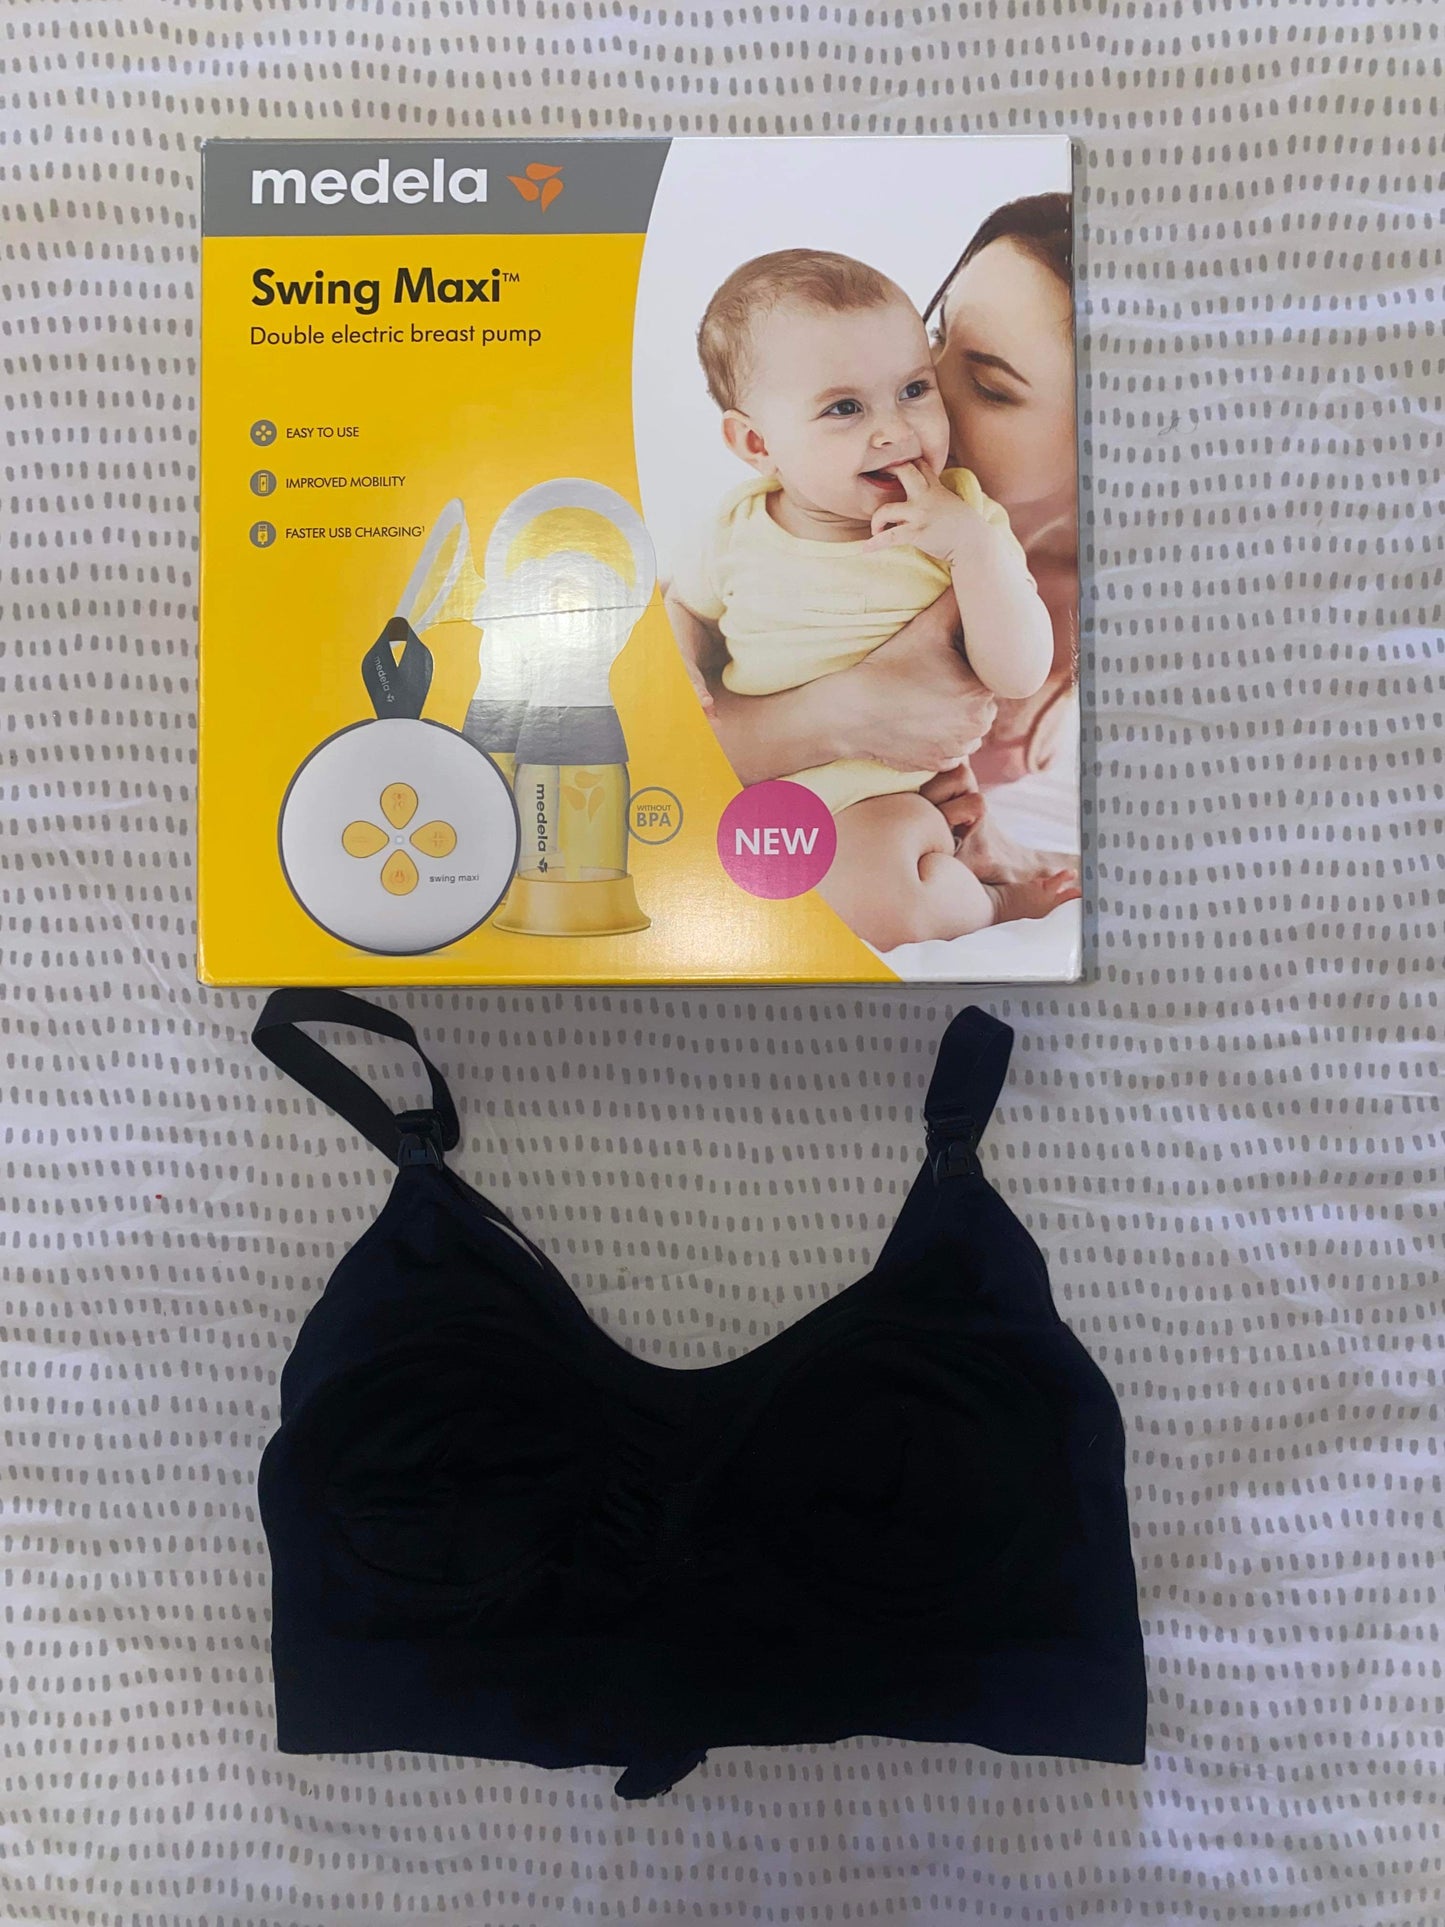 Medela Maxi Swing Double Breast Pump & Bra